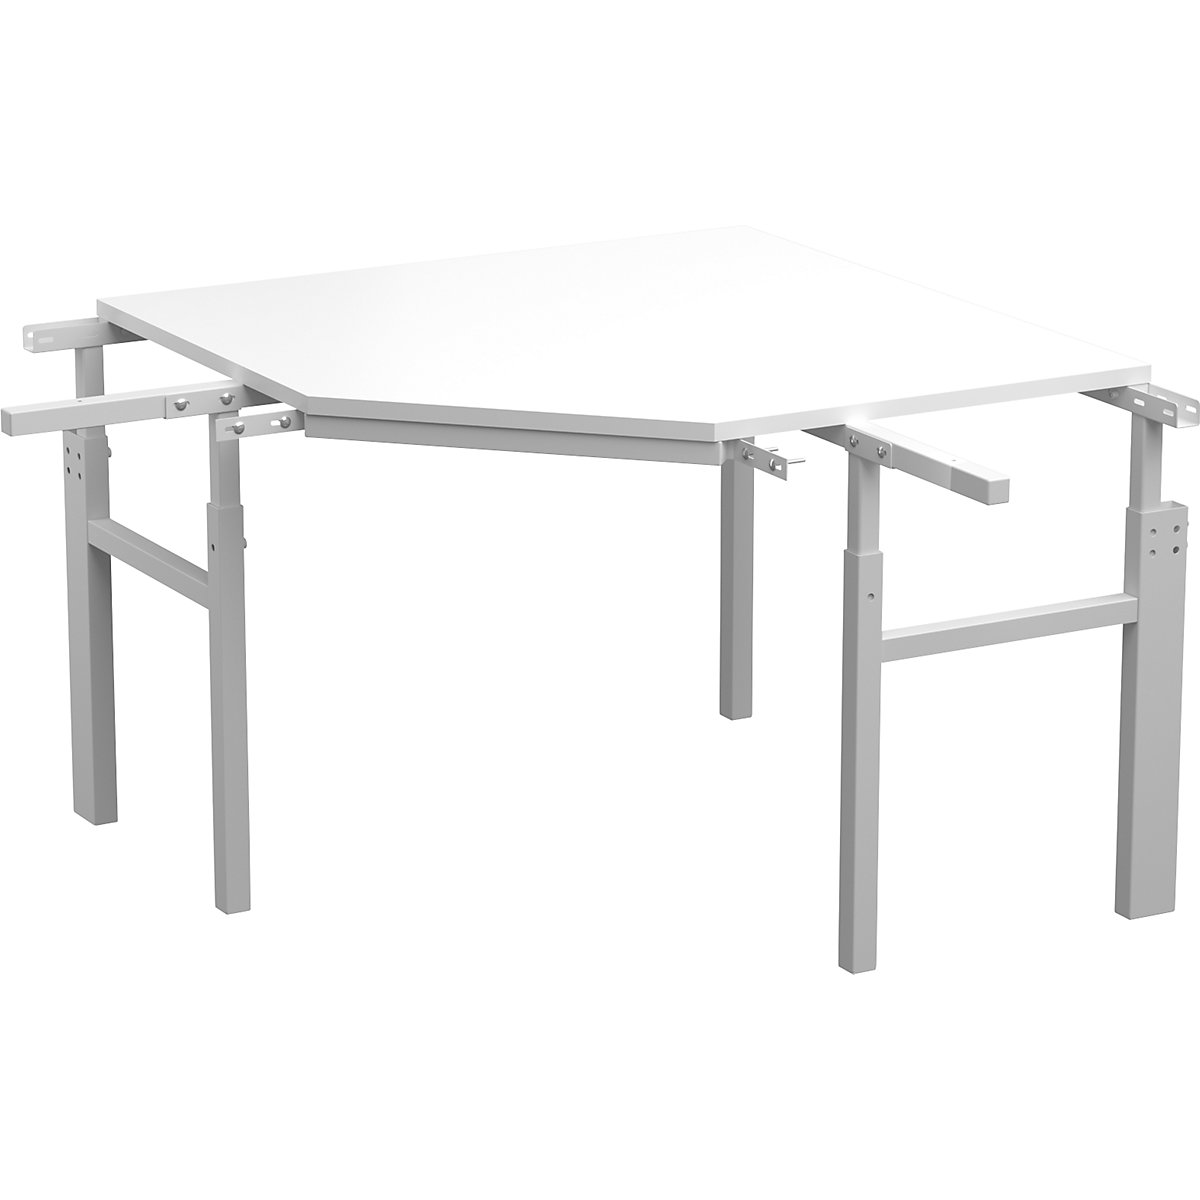 Mesa de canto da série TP – Treston, ajuste manual da altura, para 2 mesas base com placa de andares, profundidade 700 mm-3